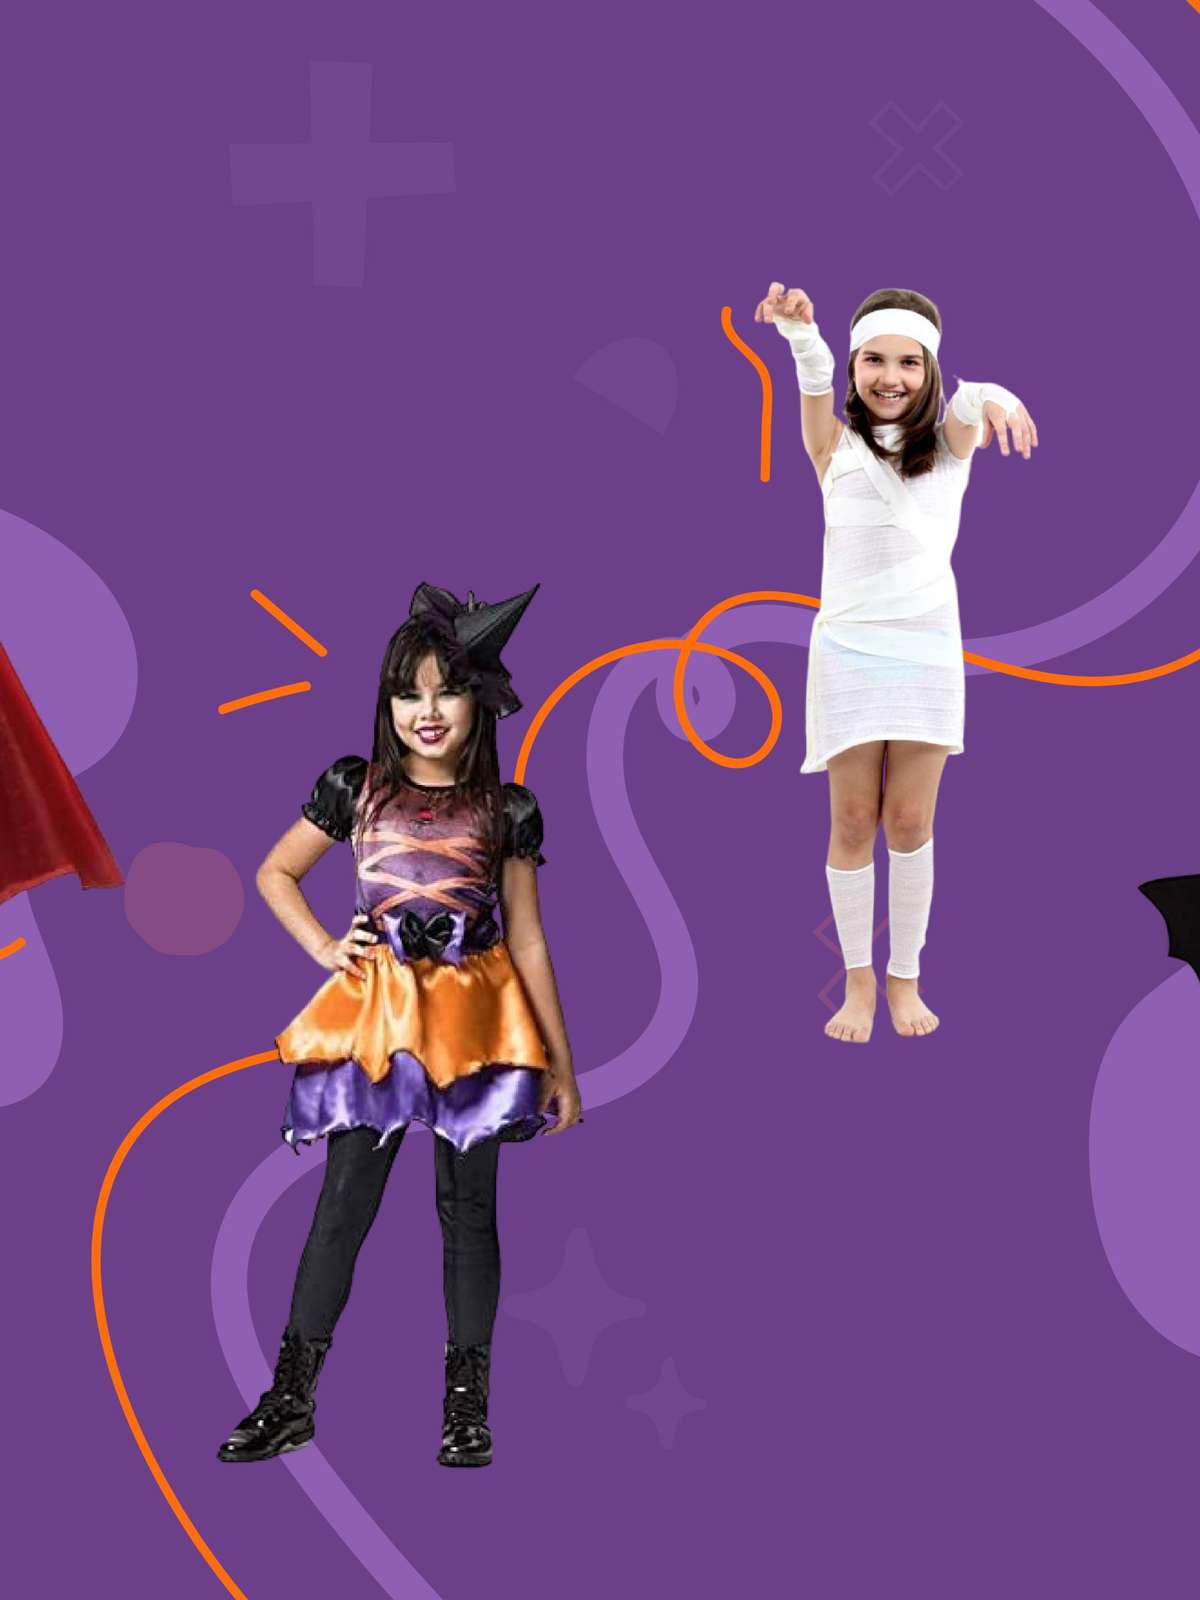 9 ideias de fantasia para usar junto com as crianças no Halloween